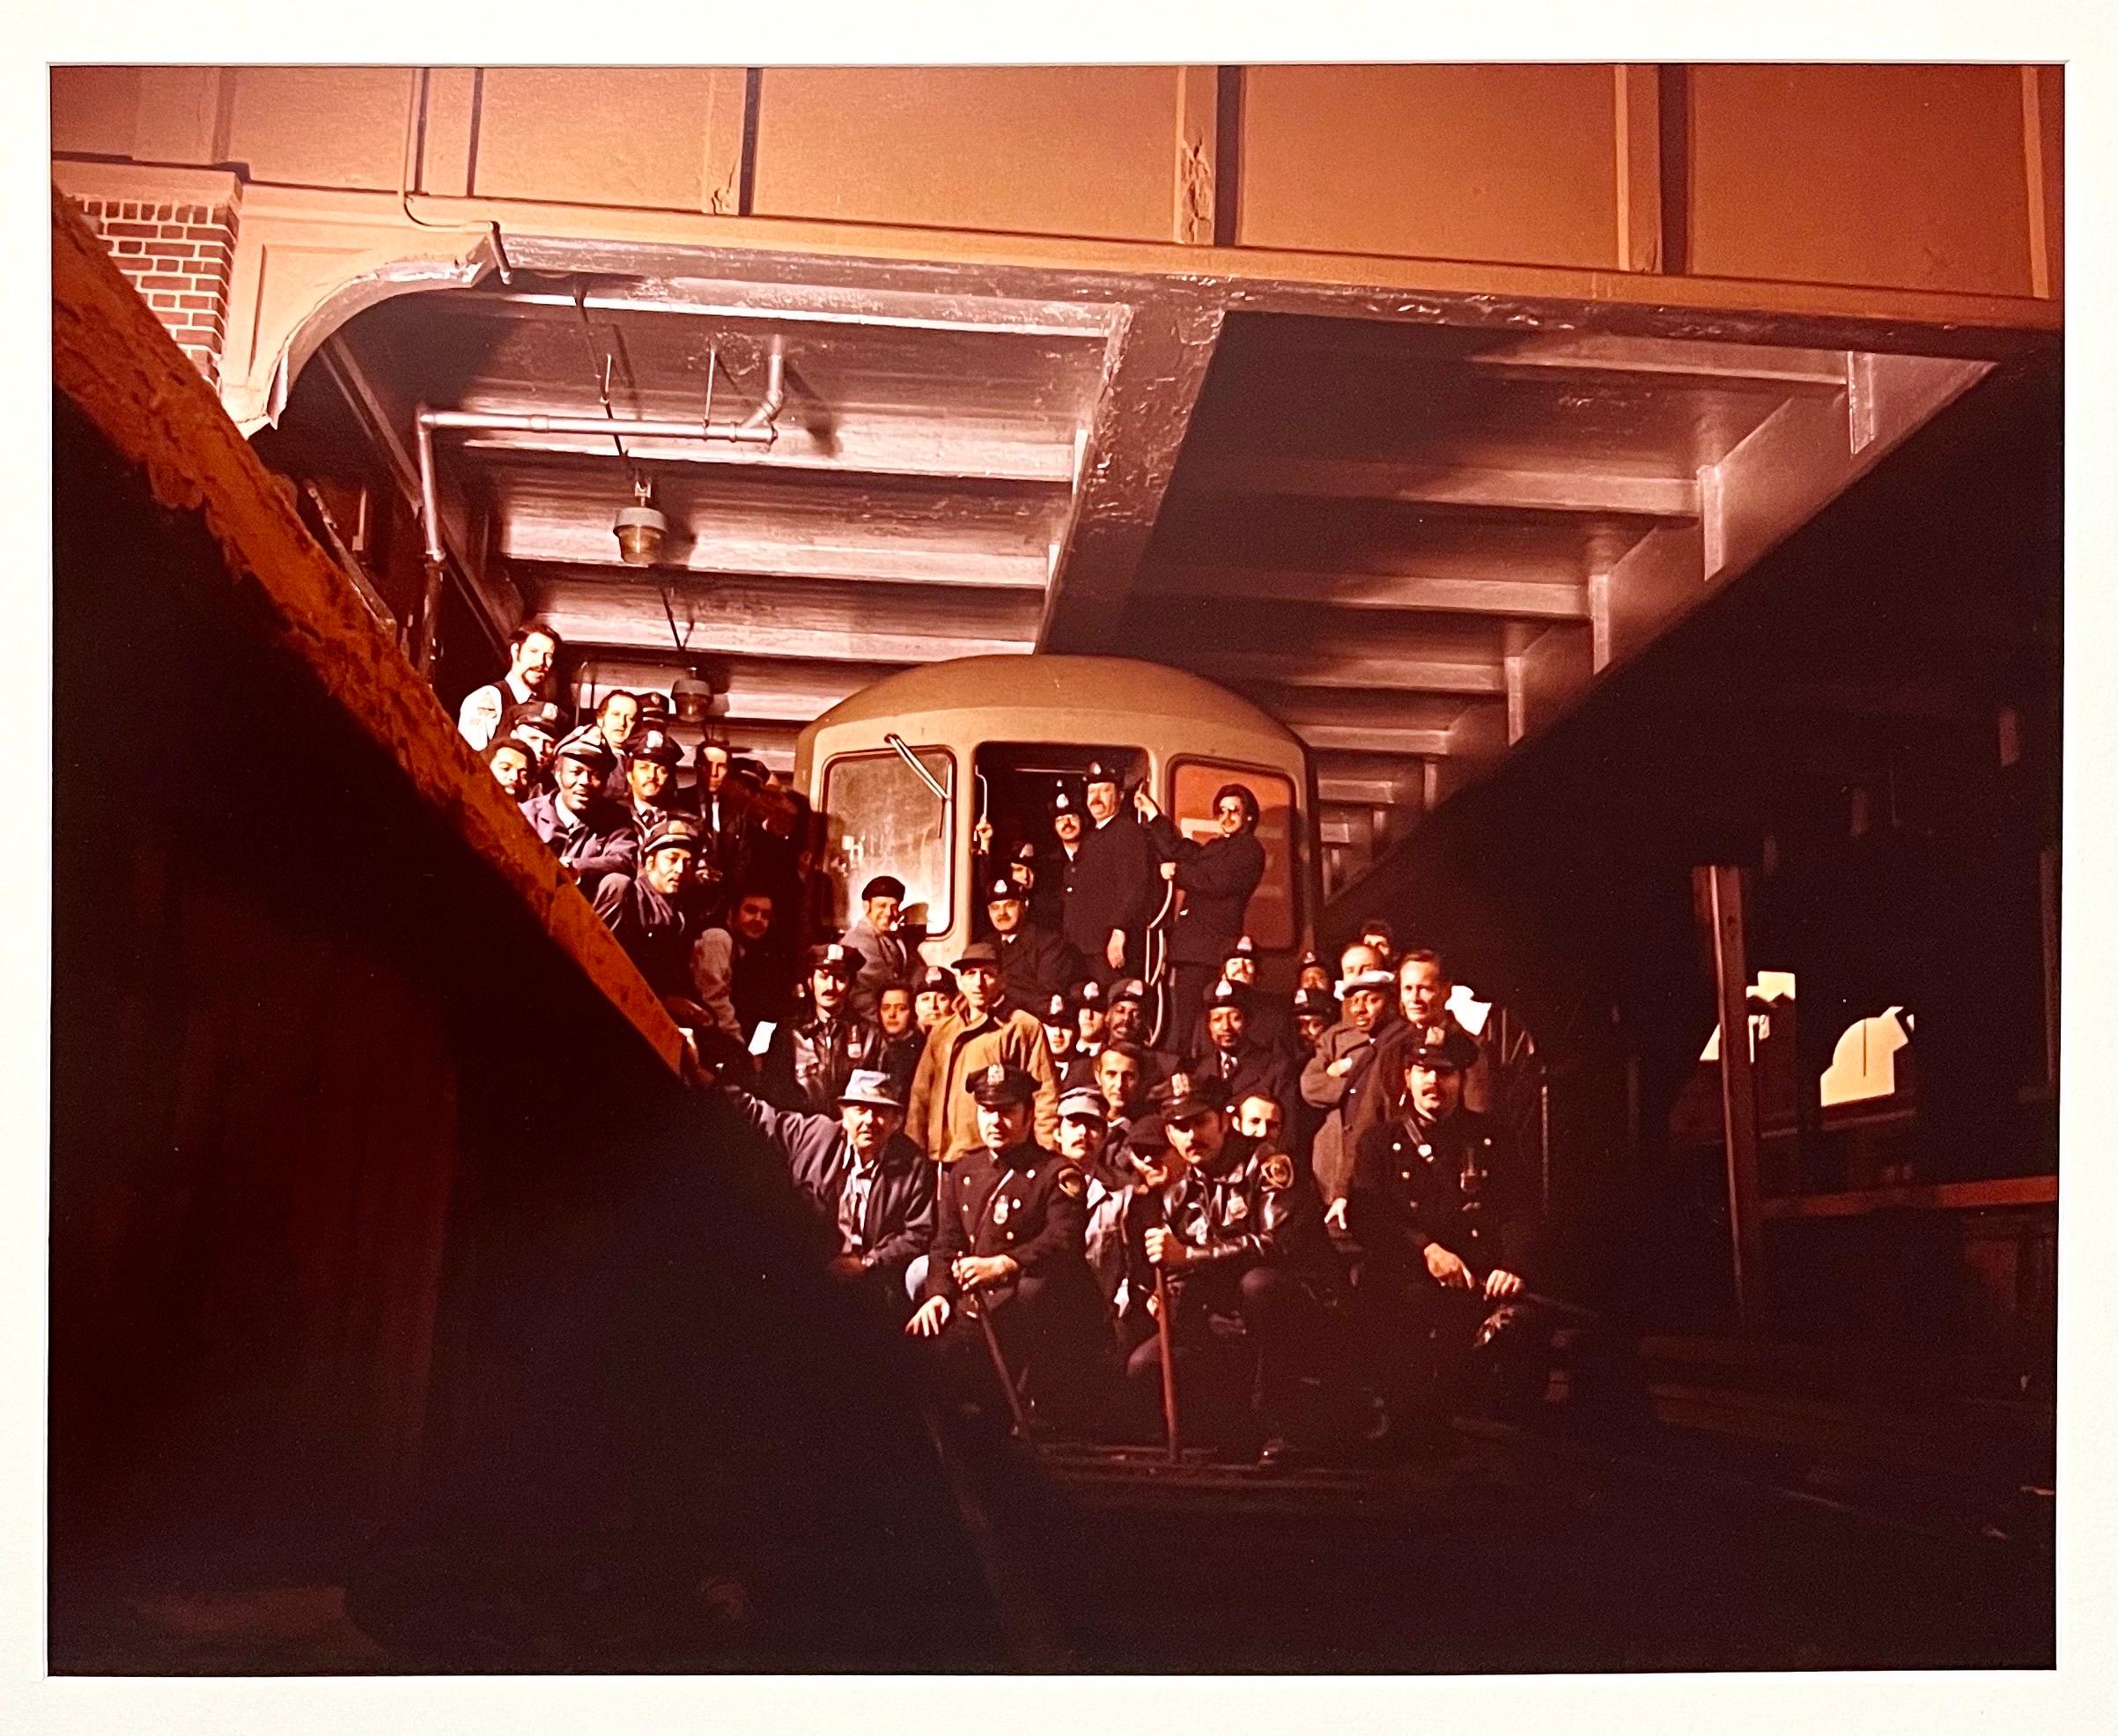 Neal Slavin (Américain, né en 1941)
Autorité de transport de la ville de New York, Brooklyn, N.Y.
Travailleurs du métro
Vintage C-print [Tirage à développement chromogène ; tirages Ektacolor].
Signé et numéroté à la main par le photographe